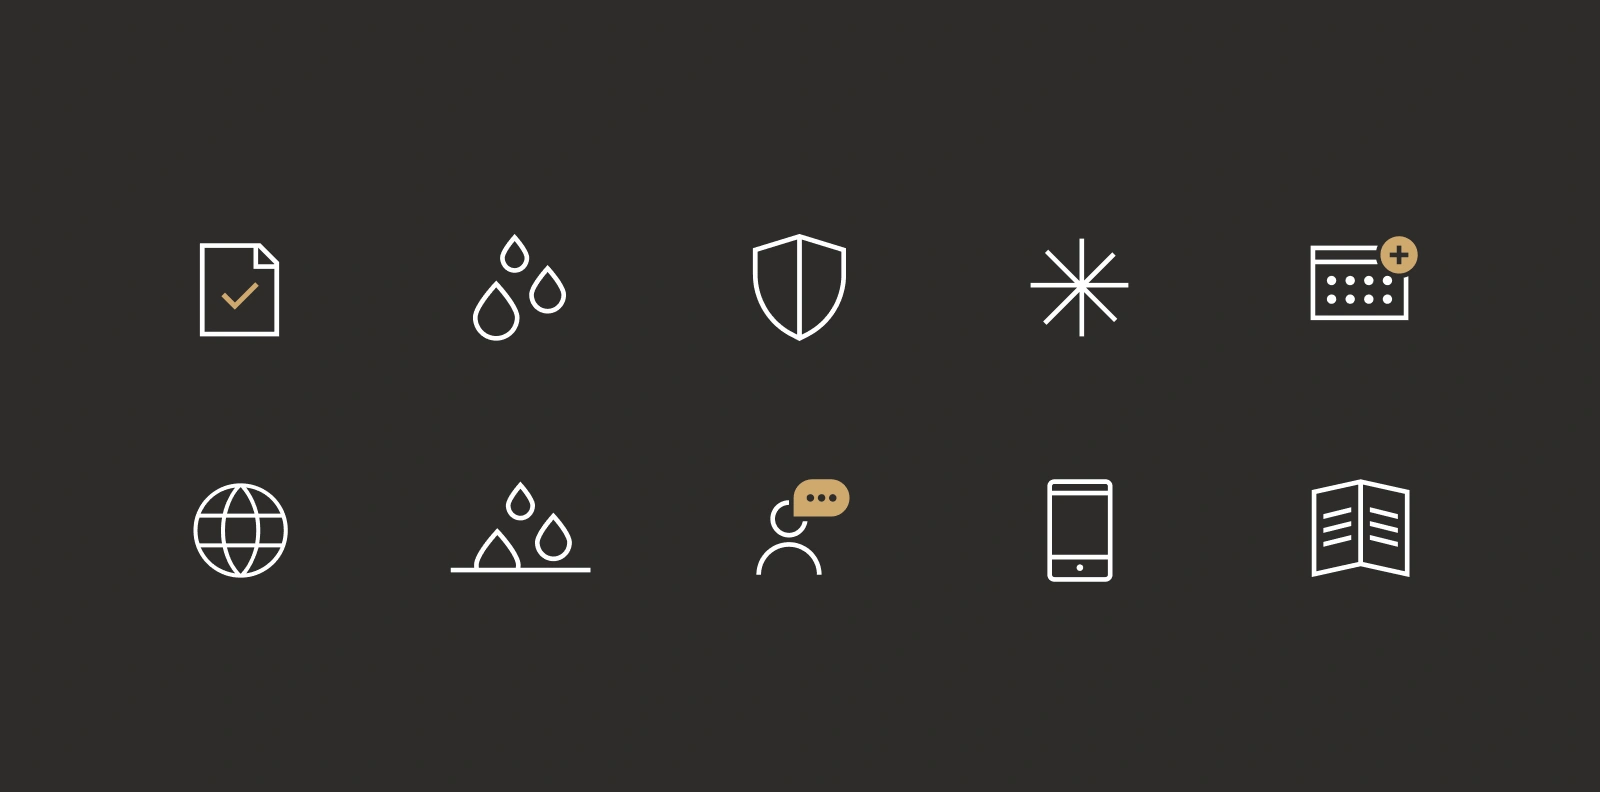 Icons from the Bolon.com design